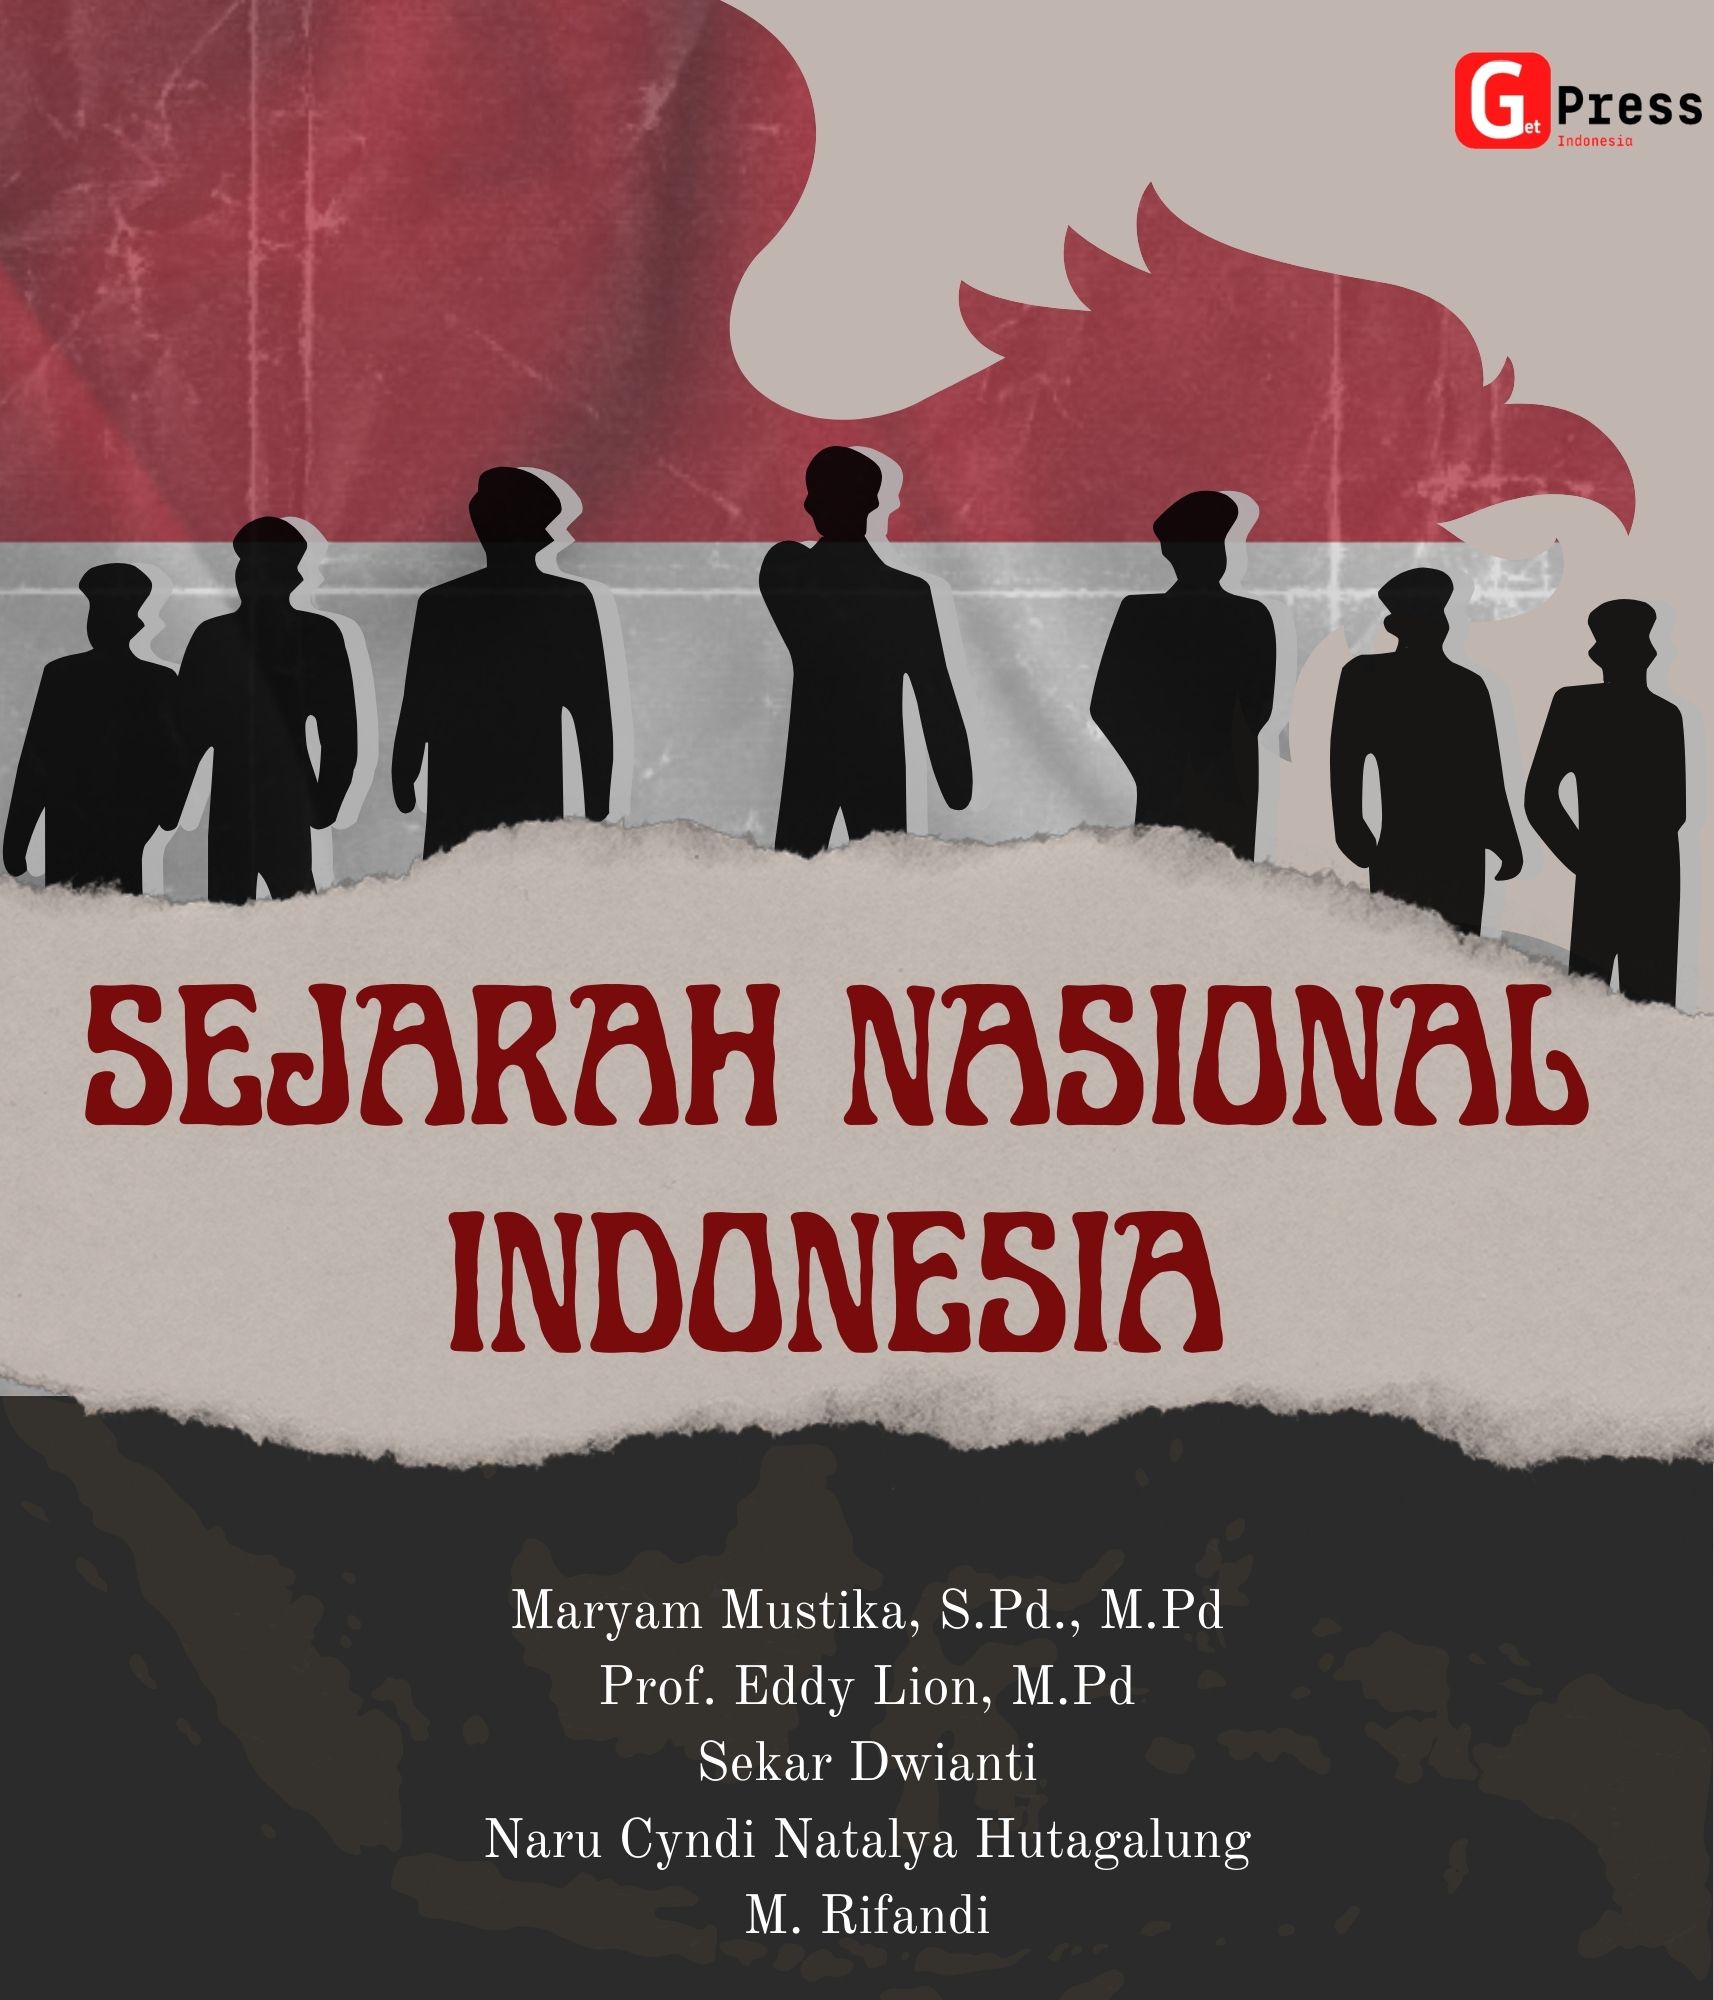 SEJARAH NASIONAL INDONESIA